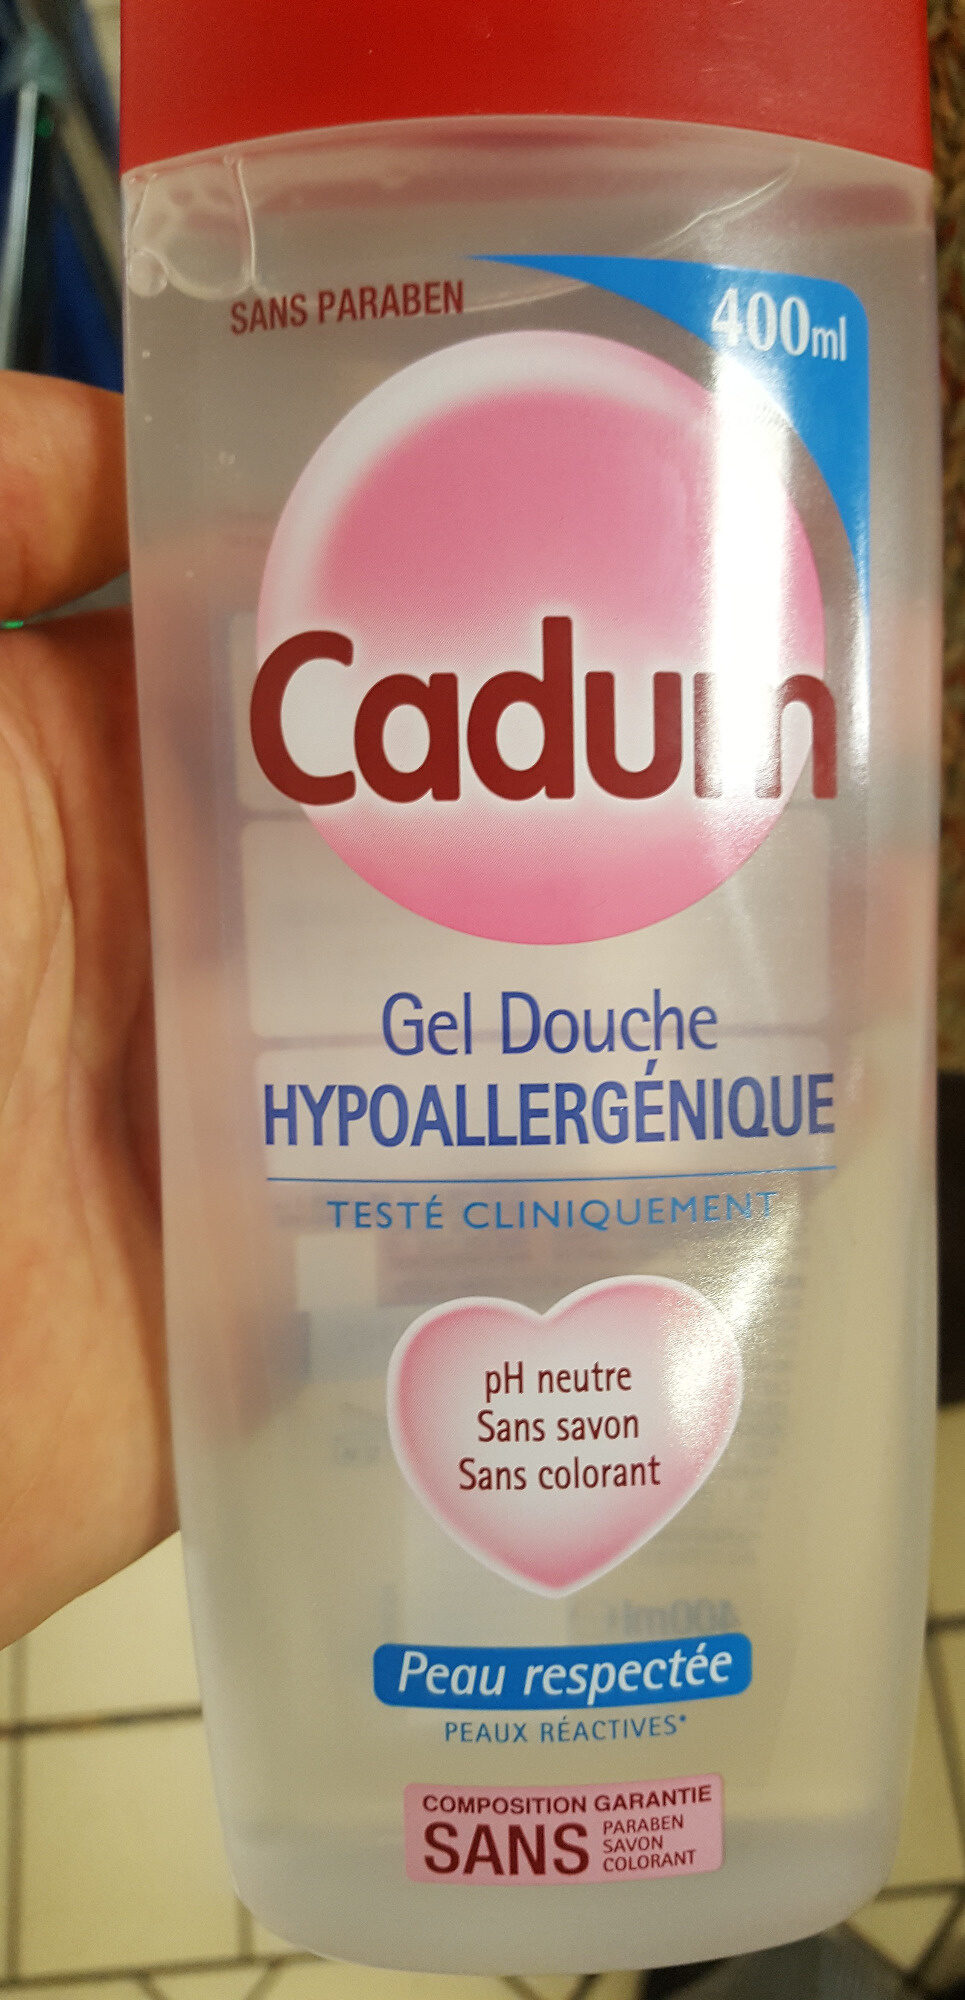 Gel douche hypoallergénique - Cadum - 400 ml